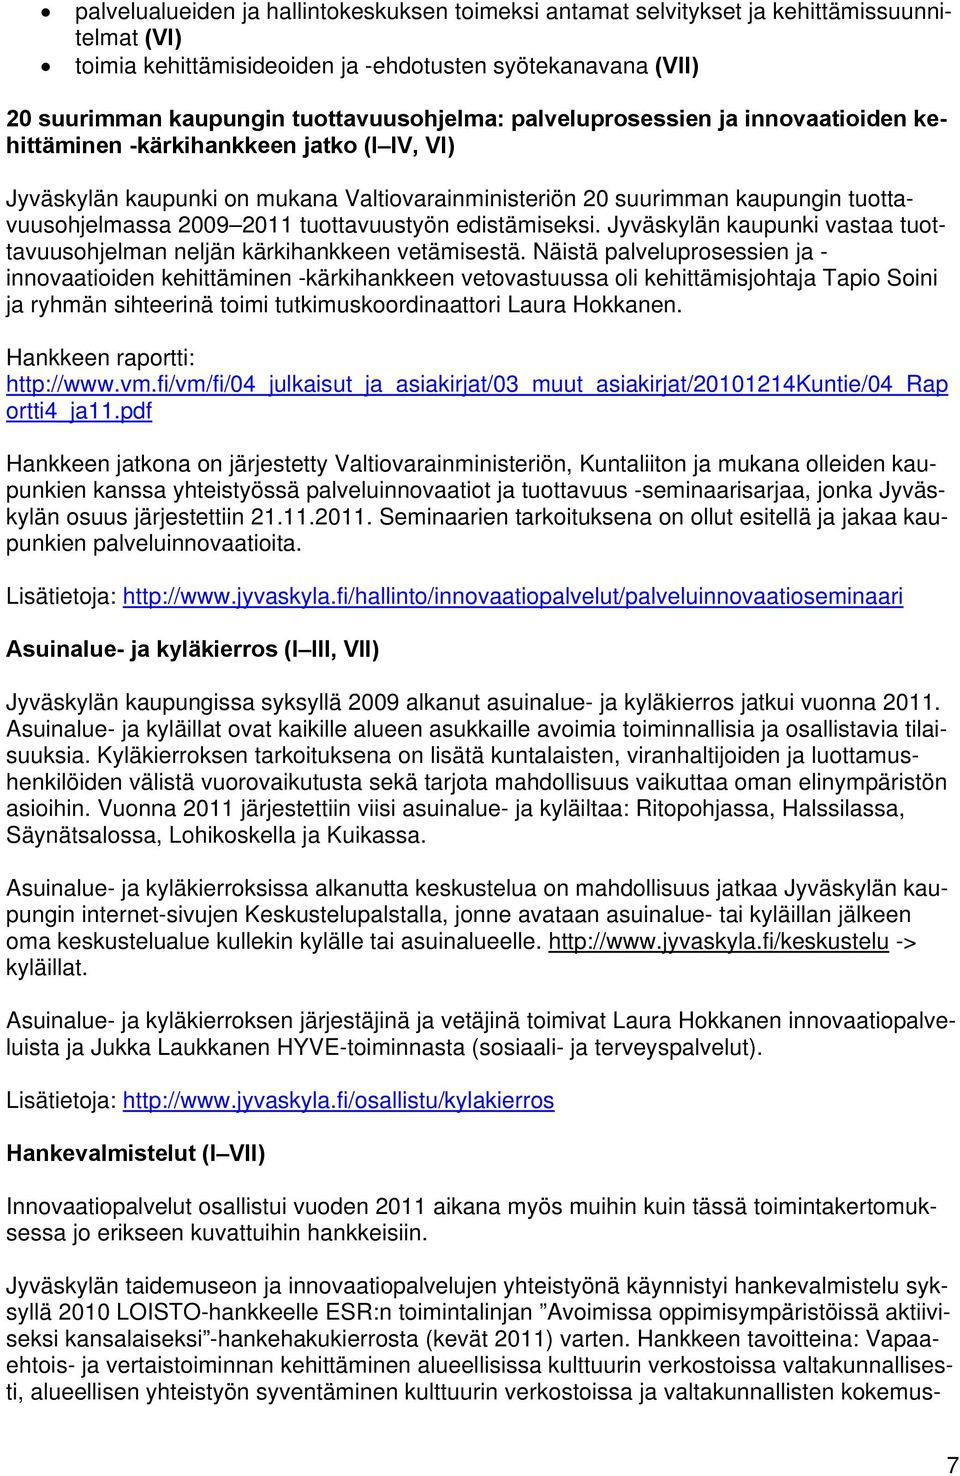 tuottavuustyön edistämiseksi. Jyväskylän kaupunki vastaa tuottavuusohjelman neljän kärkihankkeen vetämisestä.